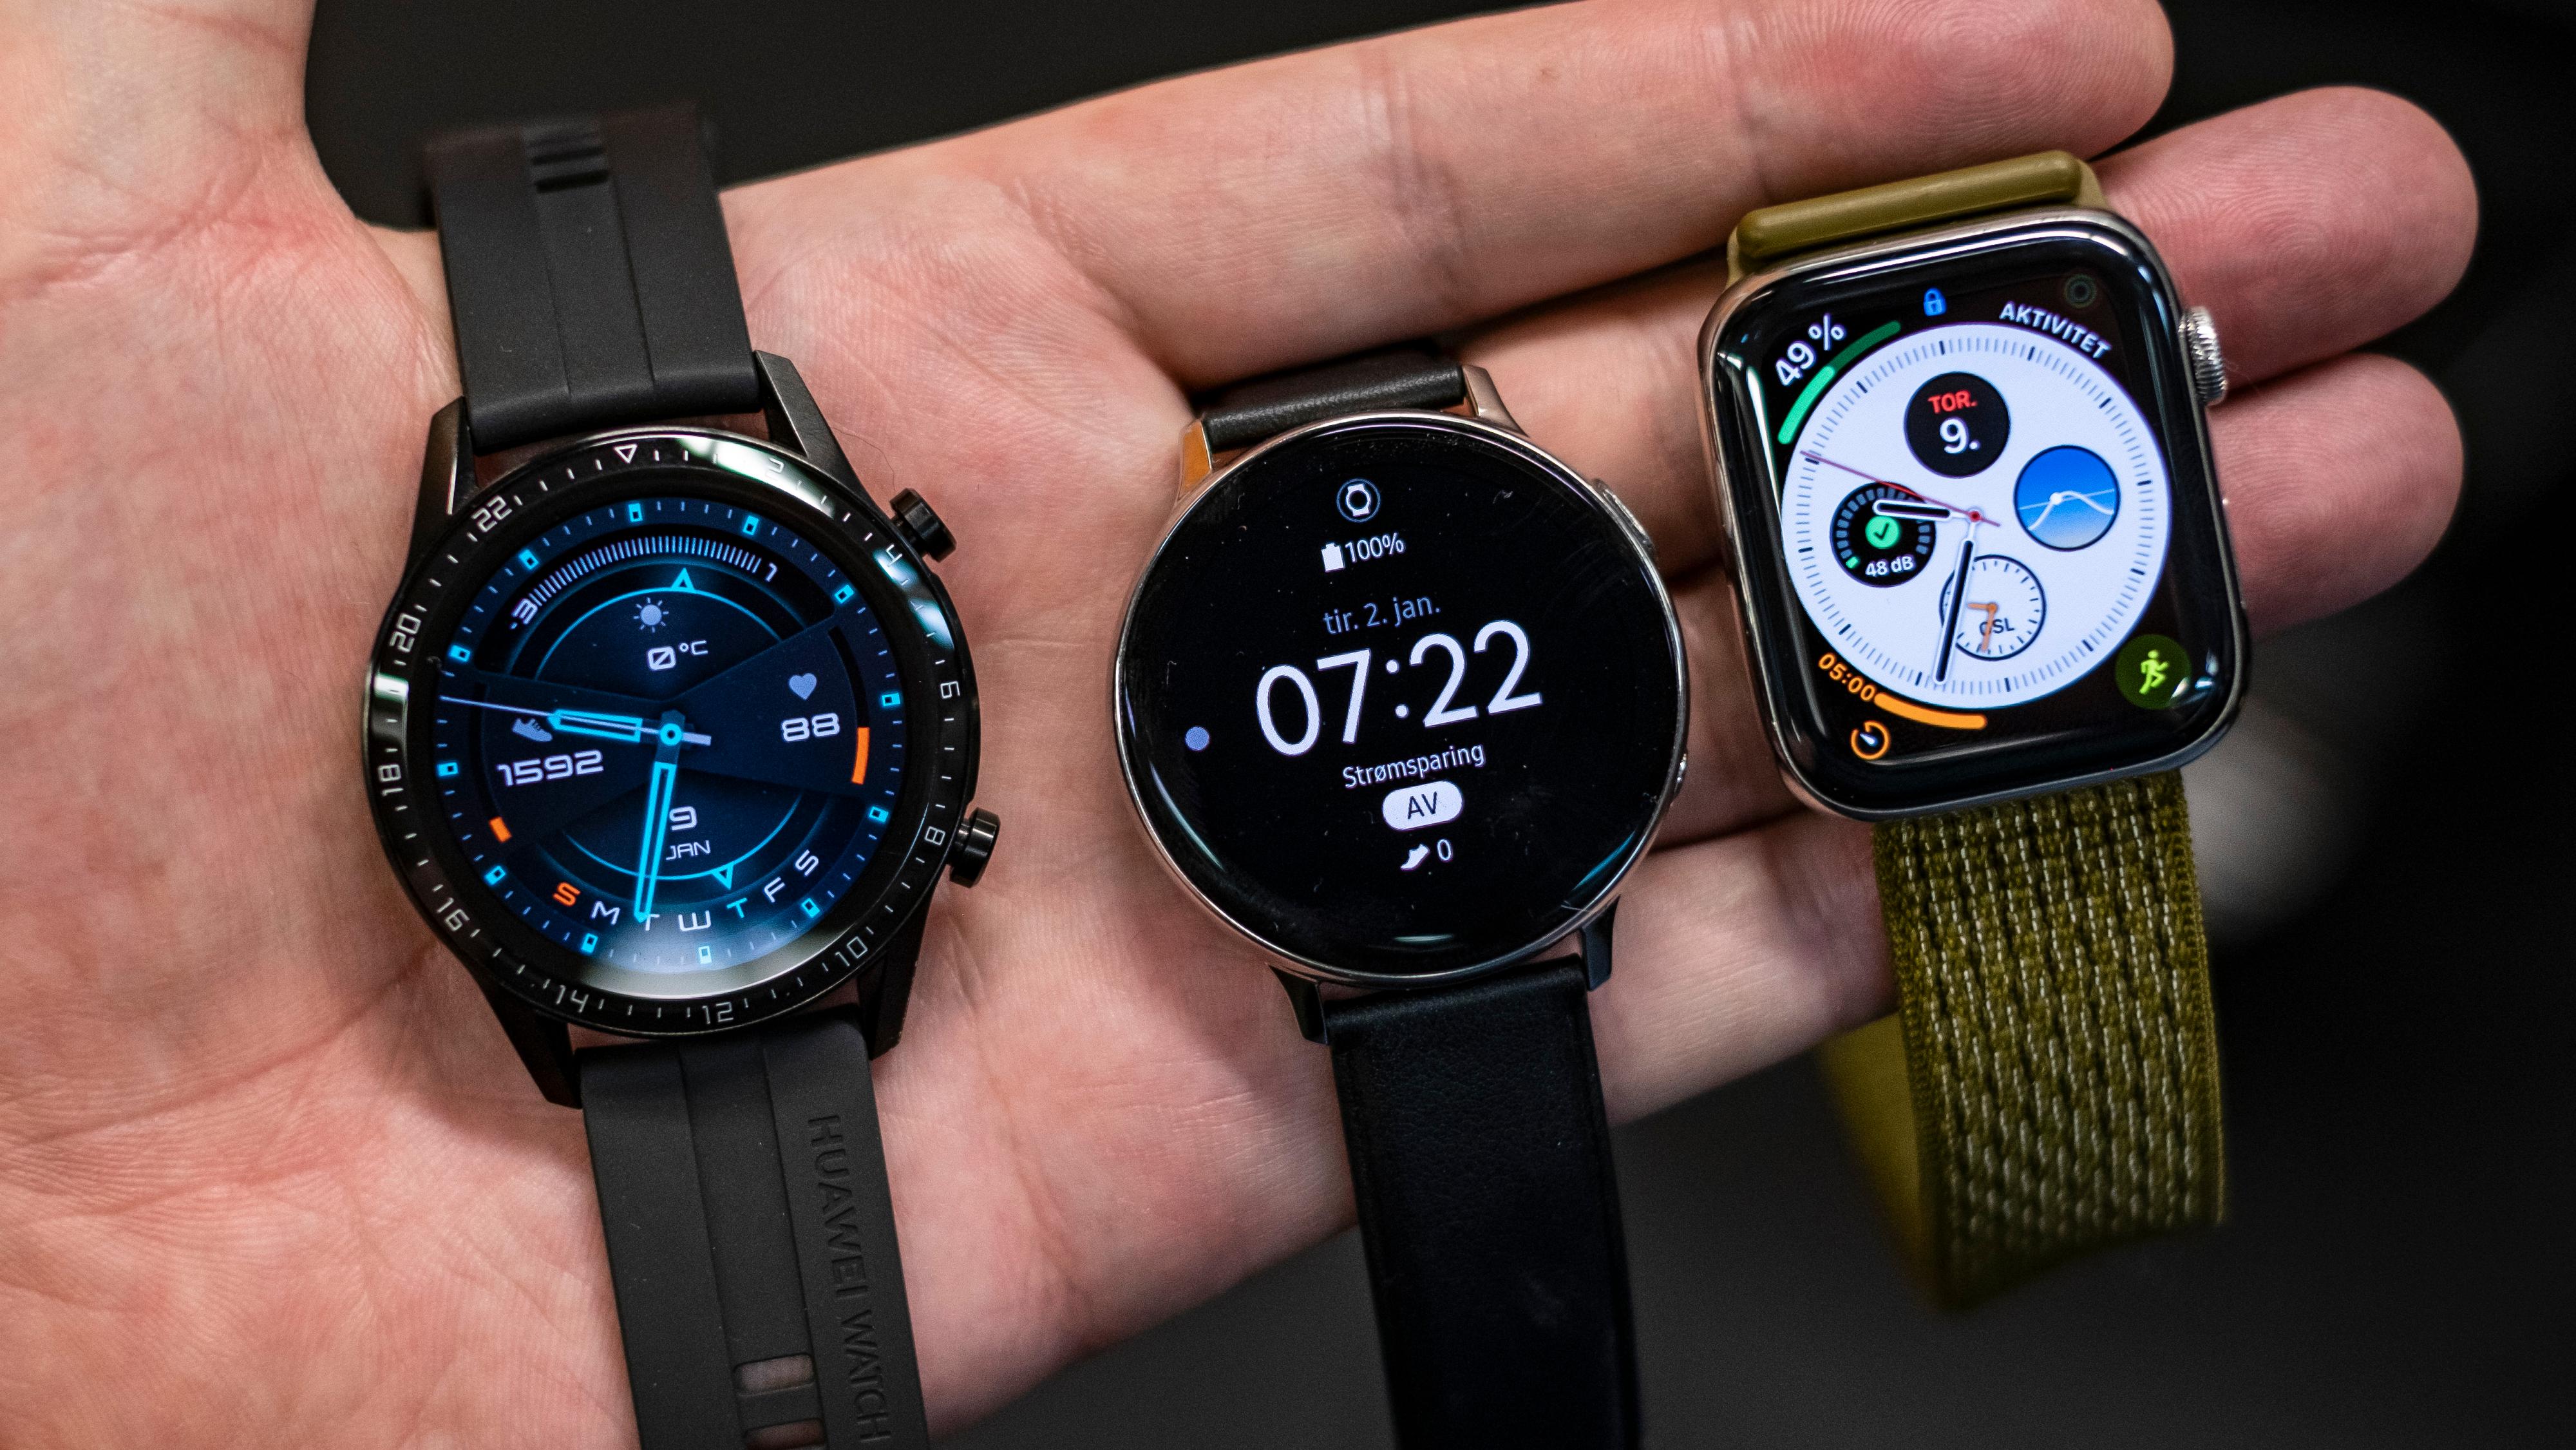 Fra venstre: Huawei Watch GT2, Samsung Watch Active 2 og Apple Watch series 5. De to konkurrentene er nesten dobbelt så dyre som Huaweis klokke, men de er også litt smartere.